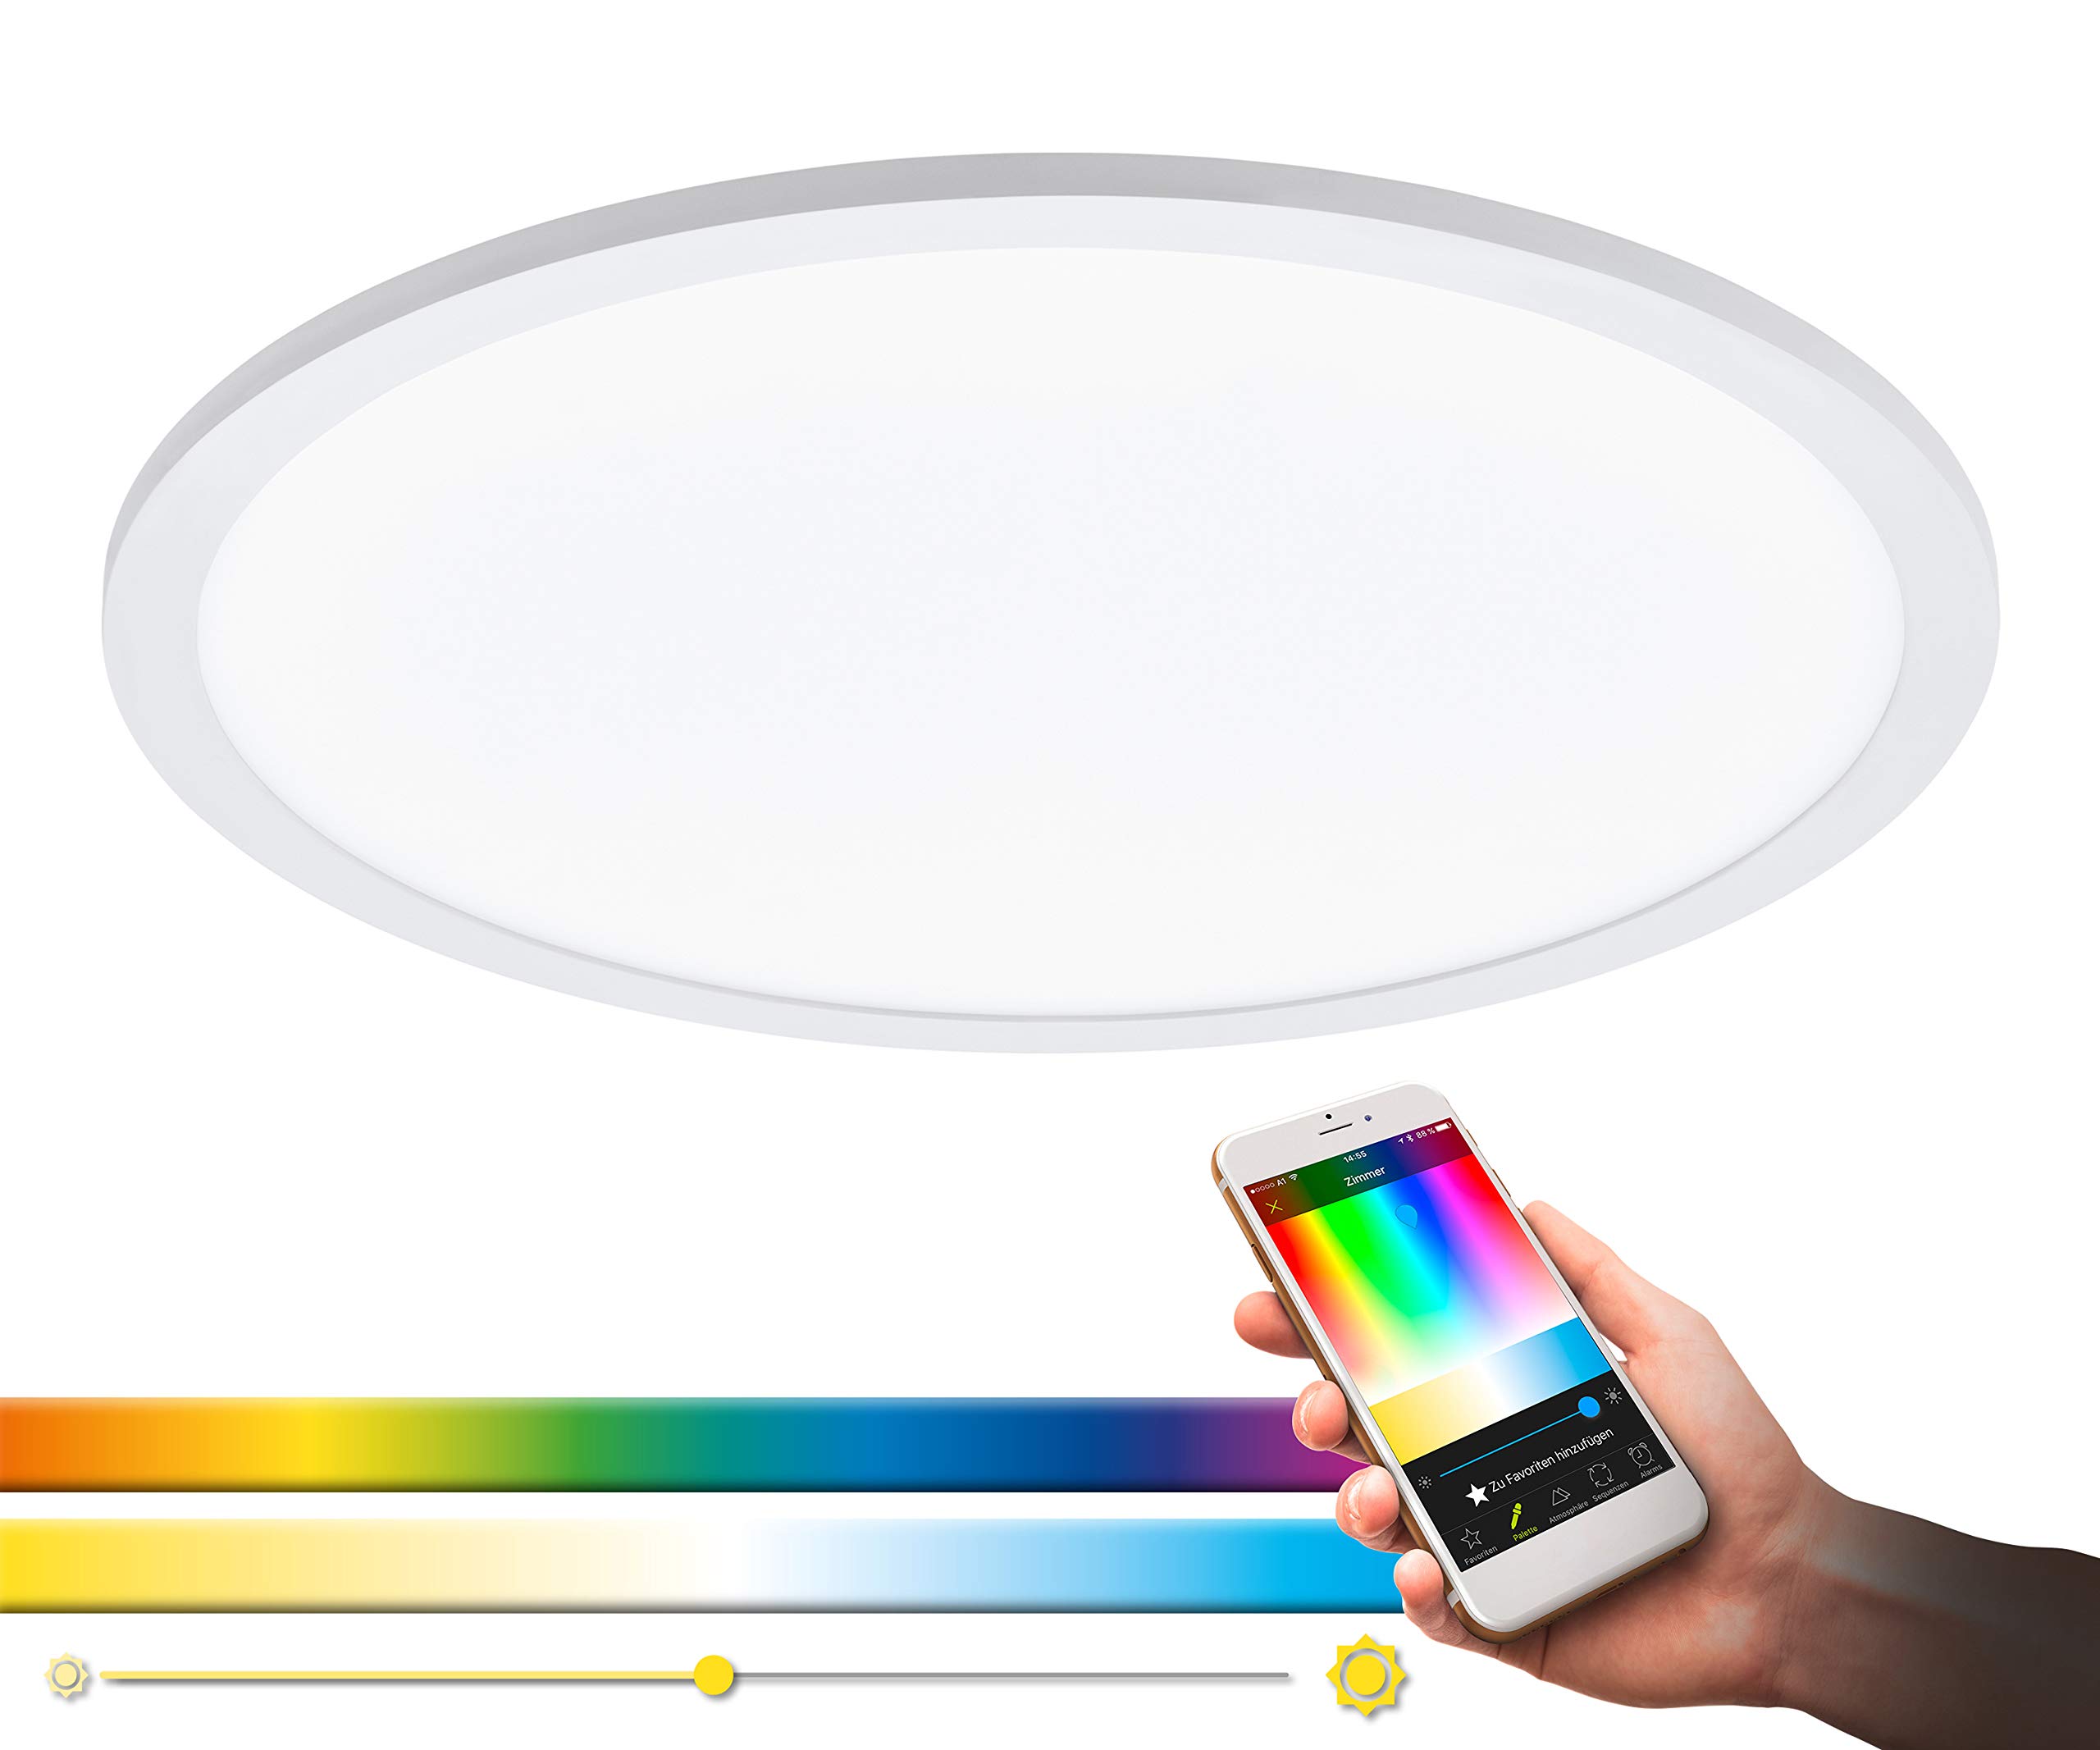 EGLO connect LED Deckenleuchte SARSINA-C Panel, Smart Home Deckenlampe, Material: Aluminium, Kunststoff, Farbe: Weiß, Ø 45 cm, inkl. Fernbedienung, dimmbar, Weißtöne und Farben einstellbar